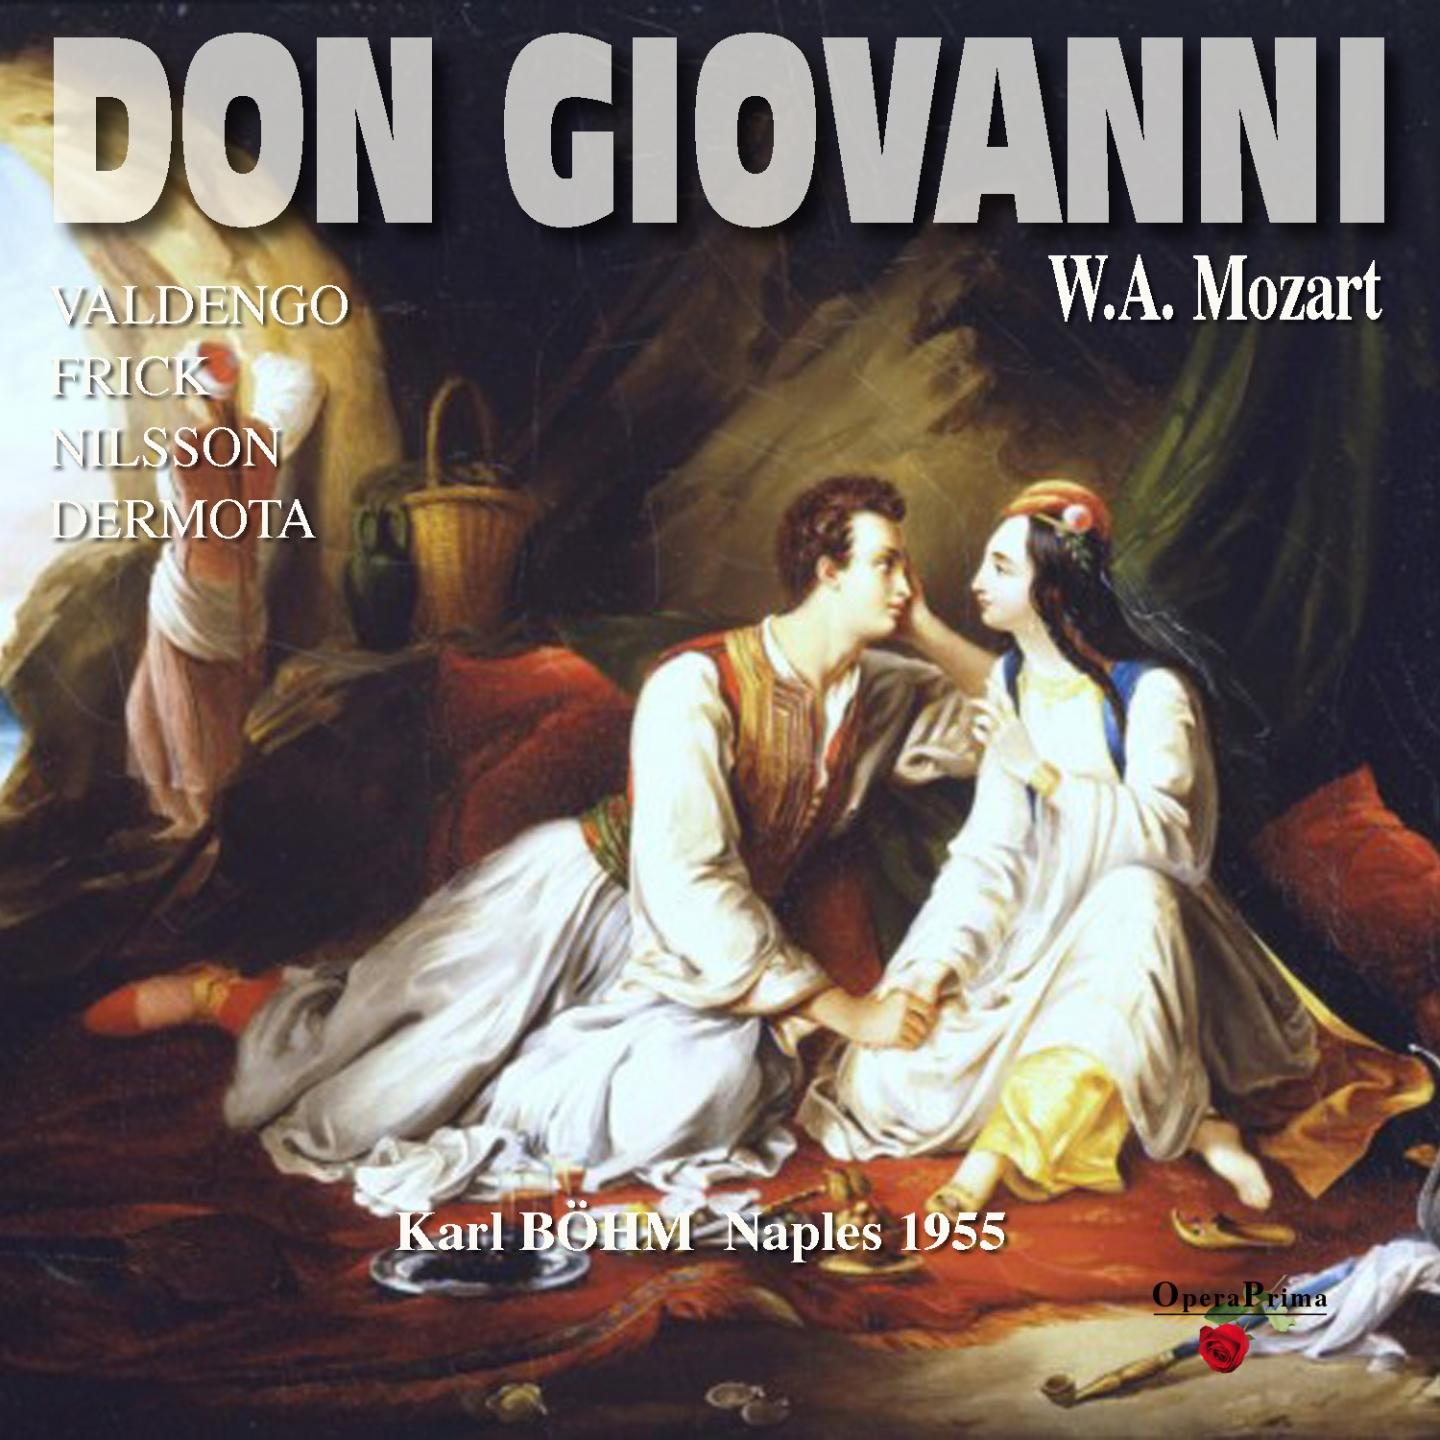 Don Giovanni: Act I - "Fin ch'han dal vino"